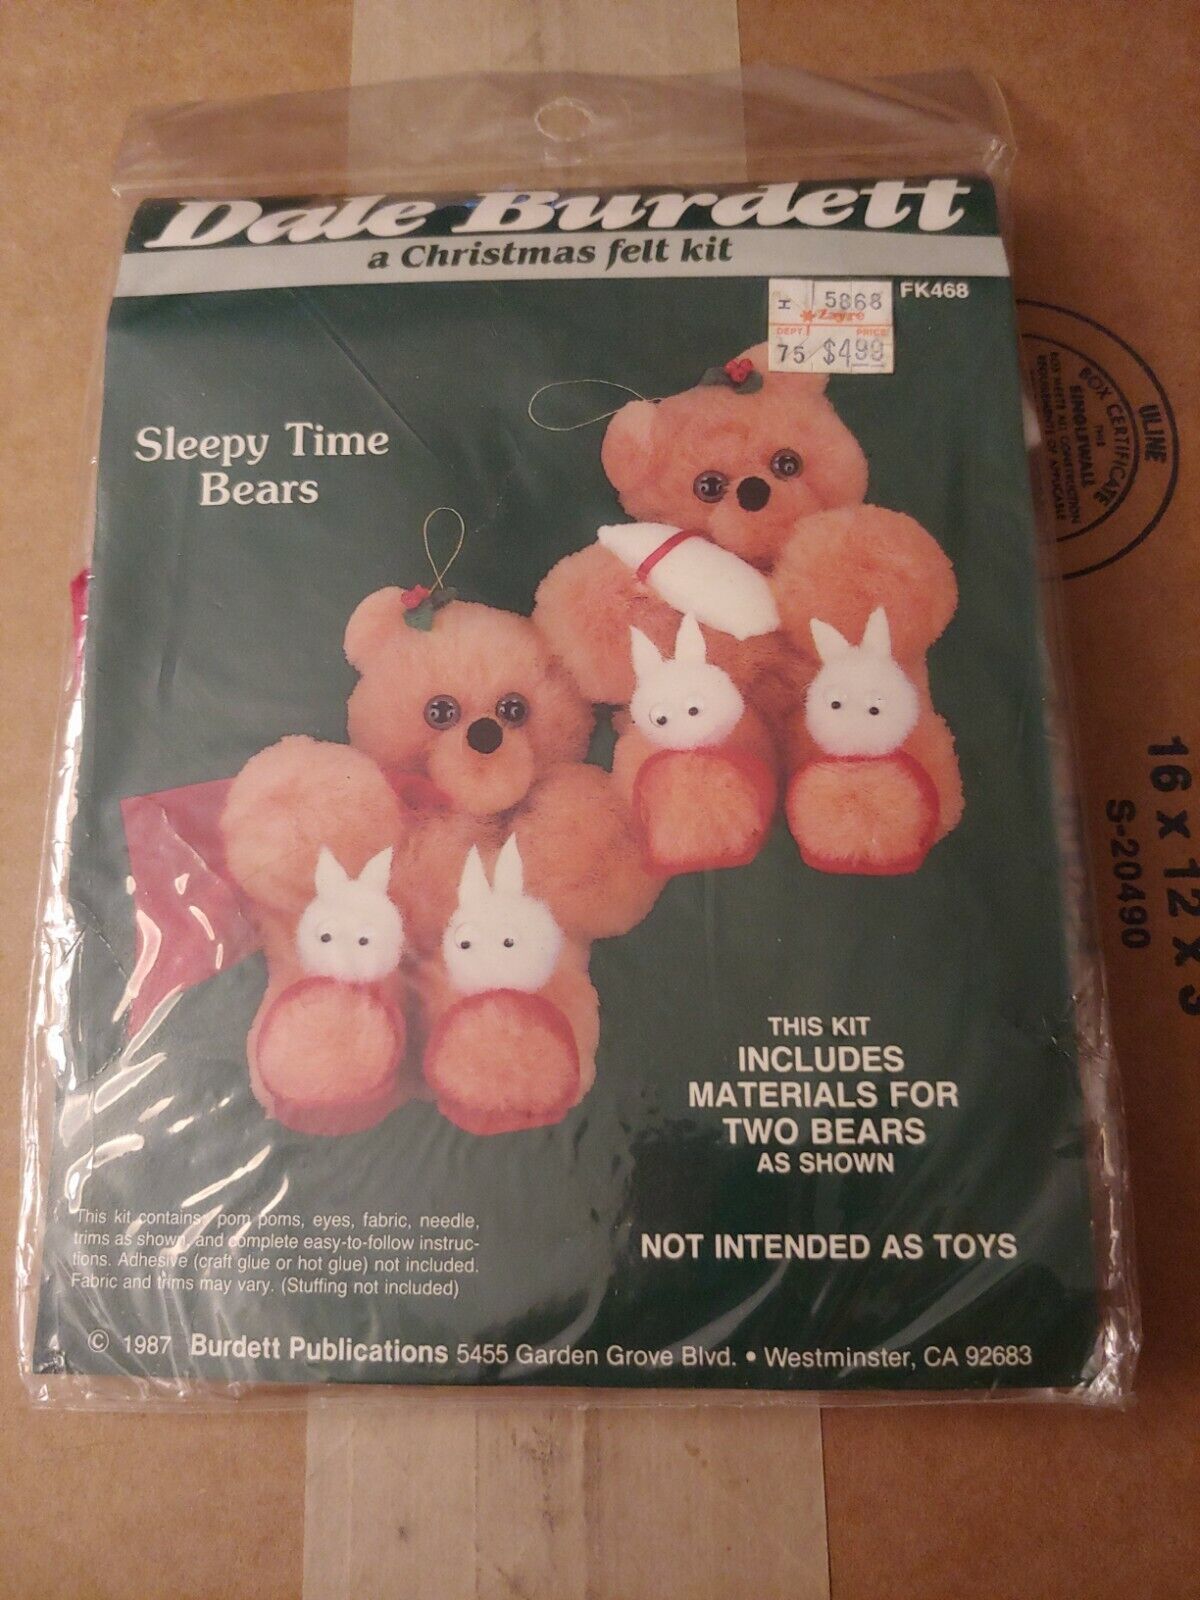 New 1987 Dale Burdett Christmas Felt Kit Sleepy Time Bears Two Bears FK468 - $8.58